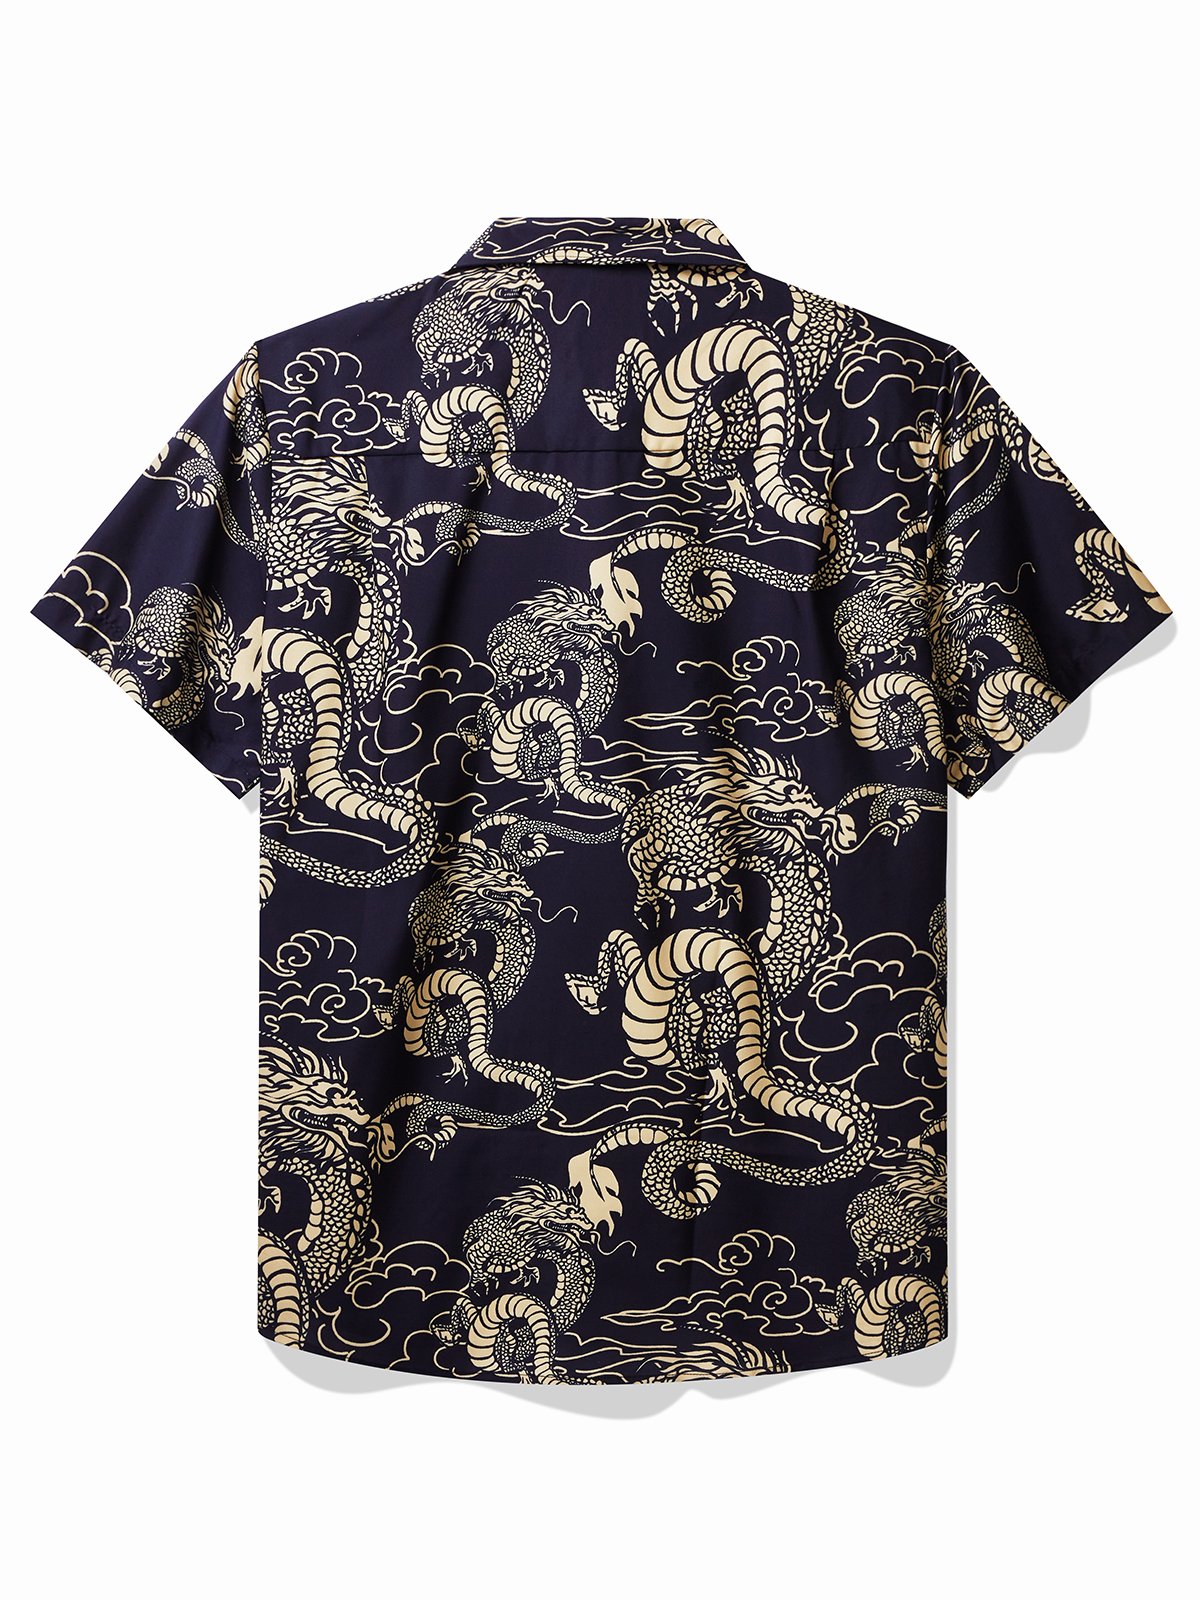 Royaura Oriental Dragon Hawaiian Shirts Lunar New Year Aloha Button Shirts